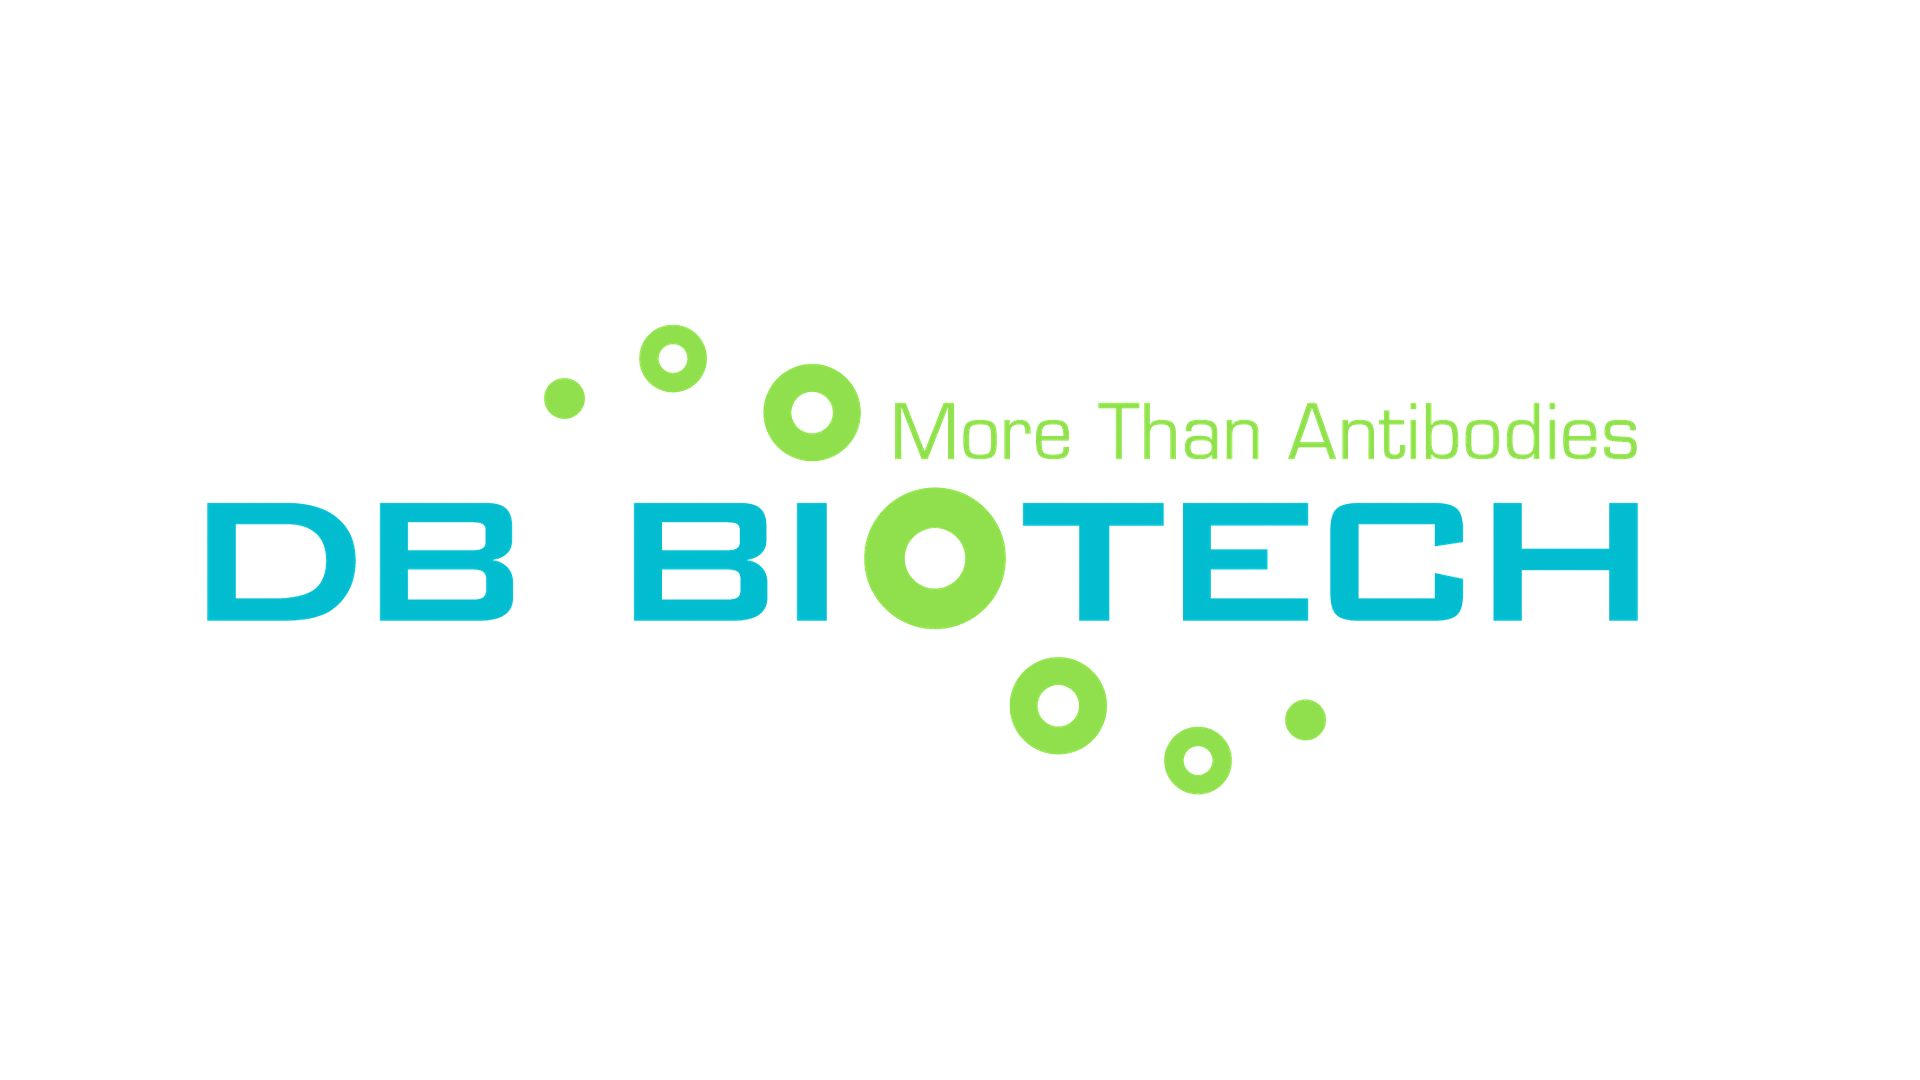 DB Biotech